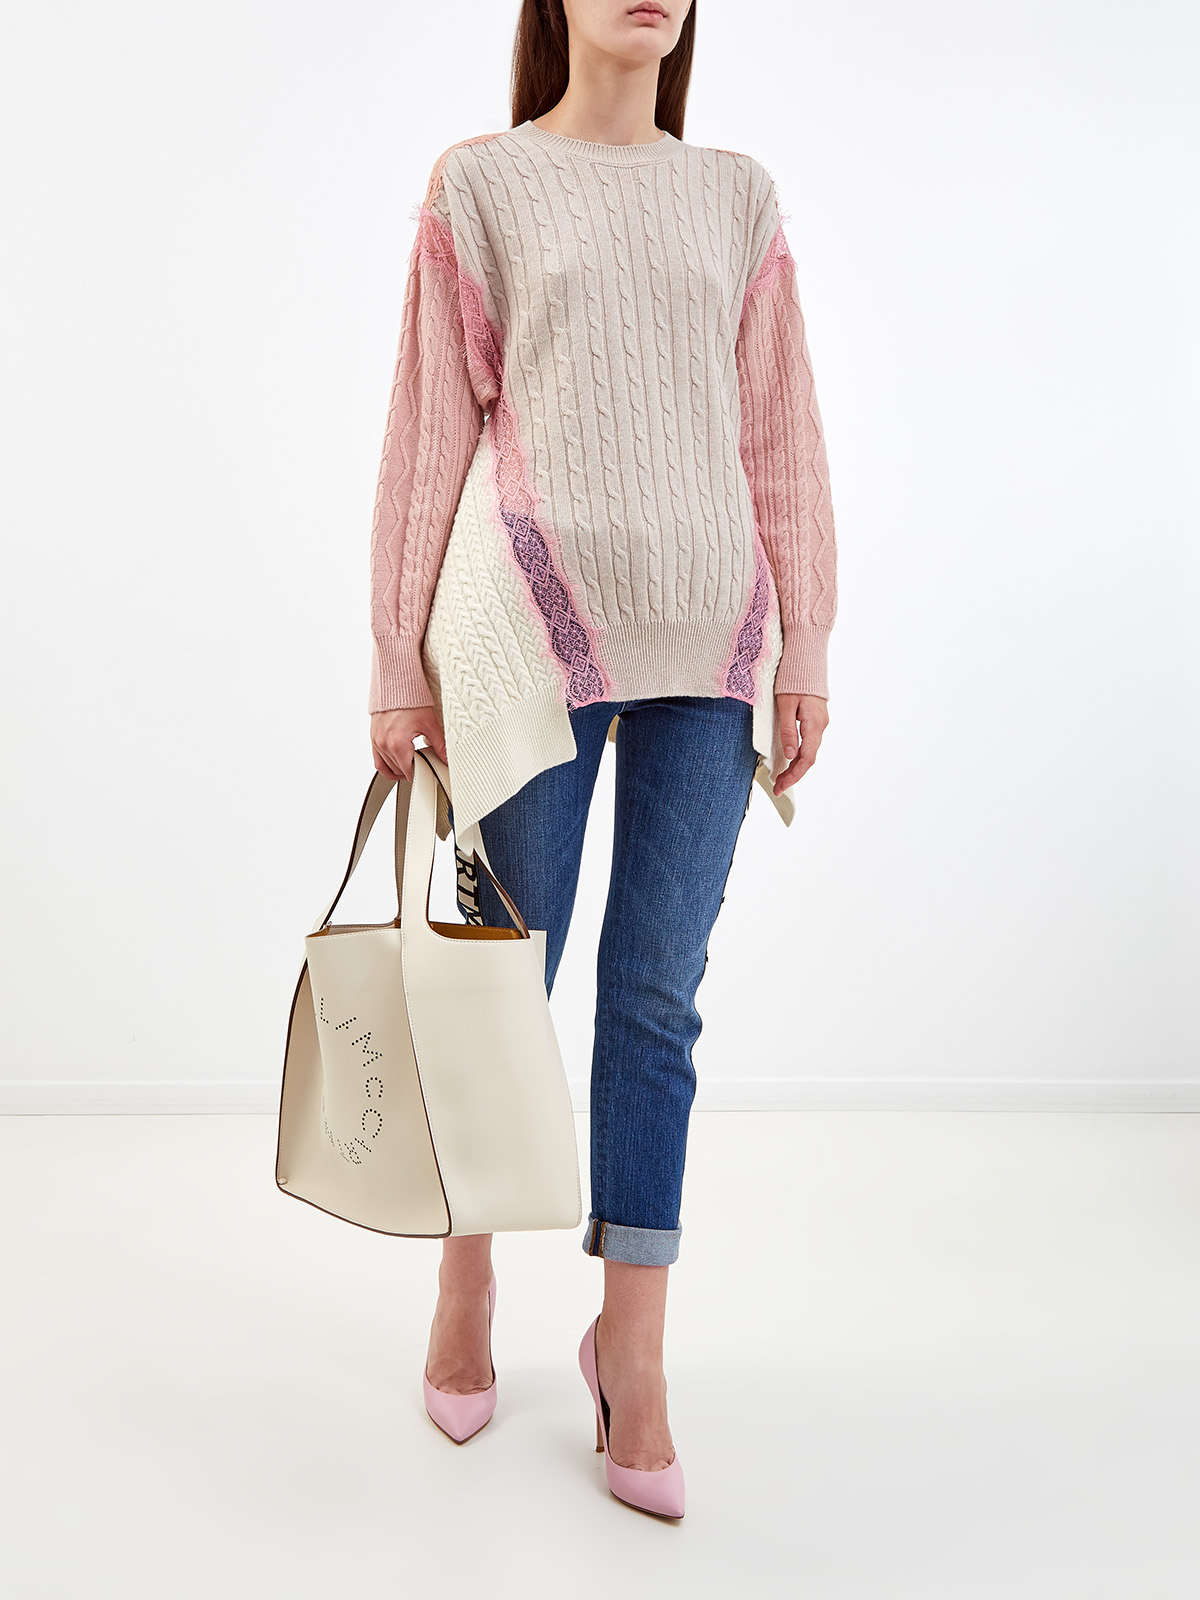 Шерстяной пуловер с объемным принтом и кружевом STELLA McCARTNEY, цвет розовый, размер 38;36 - фото 2